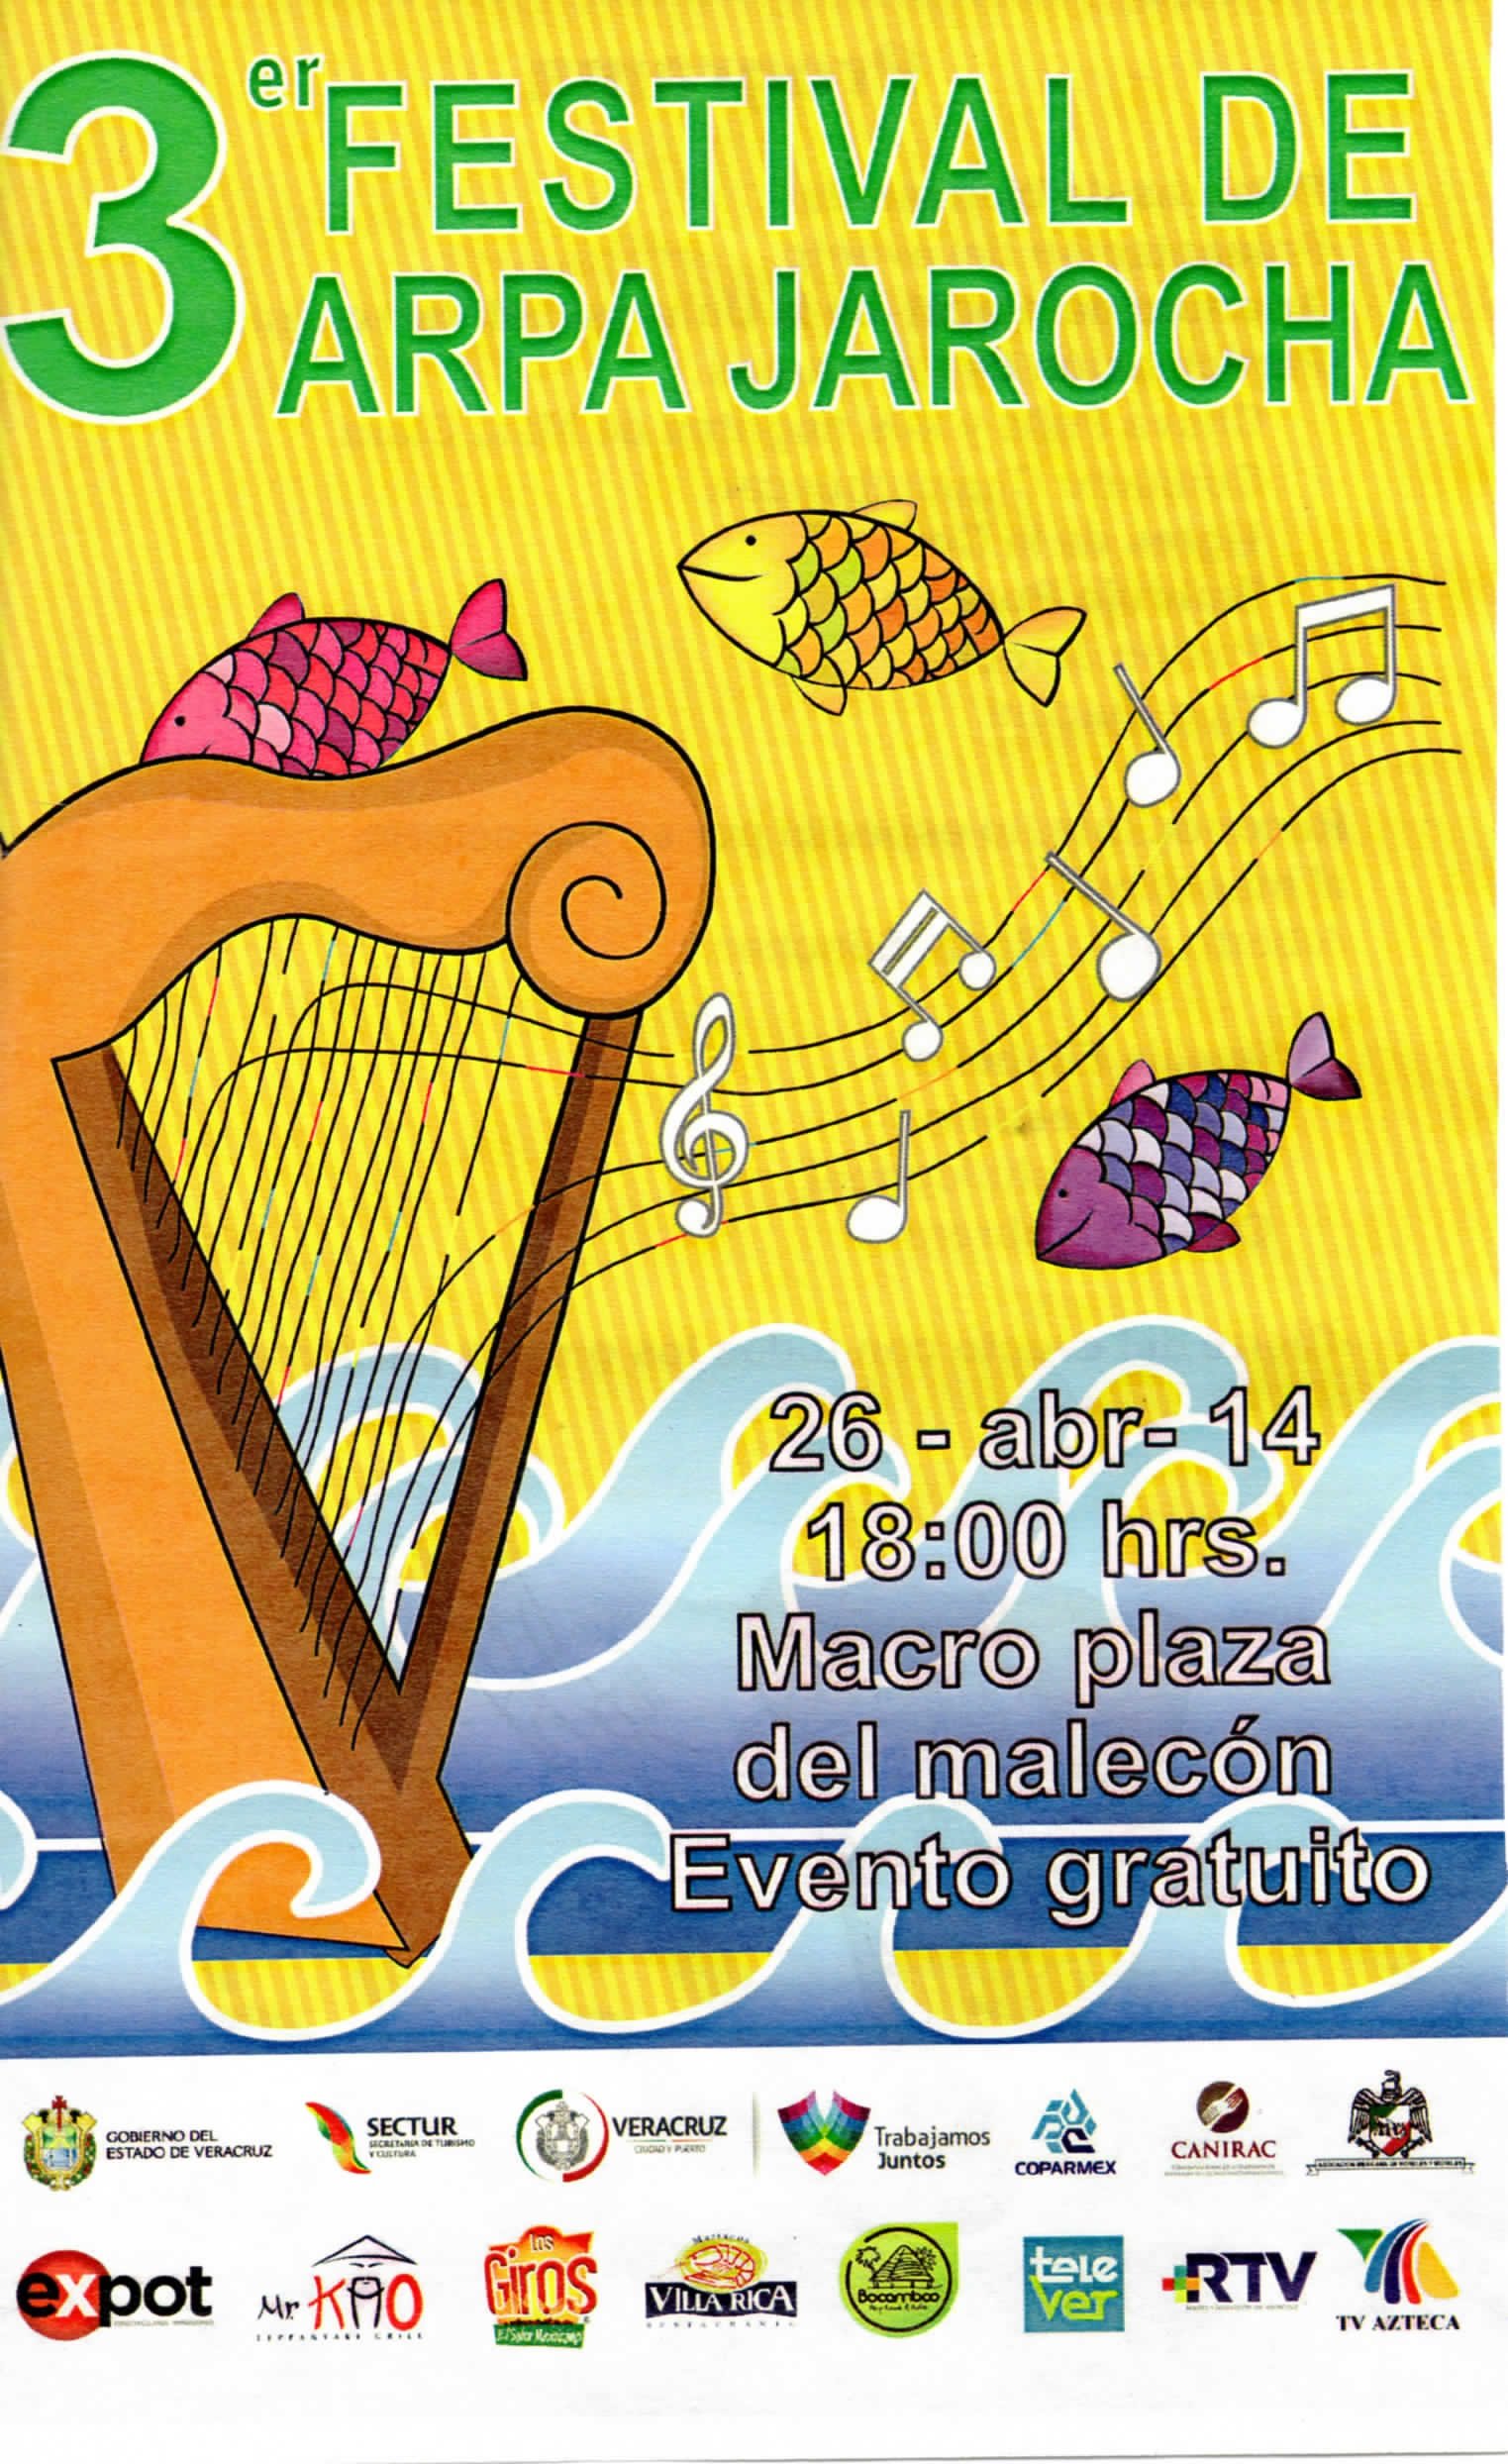 3° Festival de Arpa Jarocha en Macroplaza del Malecón (Veracruz) el 26 Abr  2014 | Last.fm